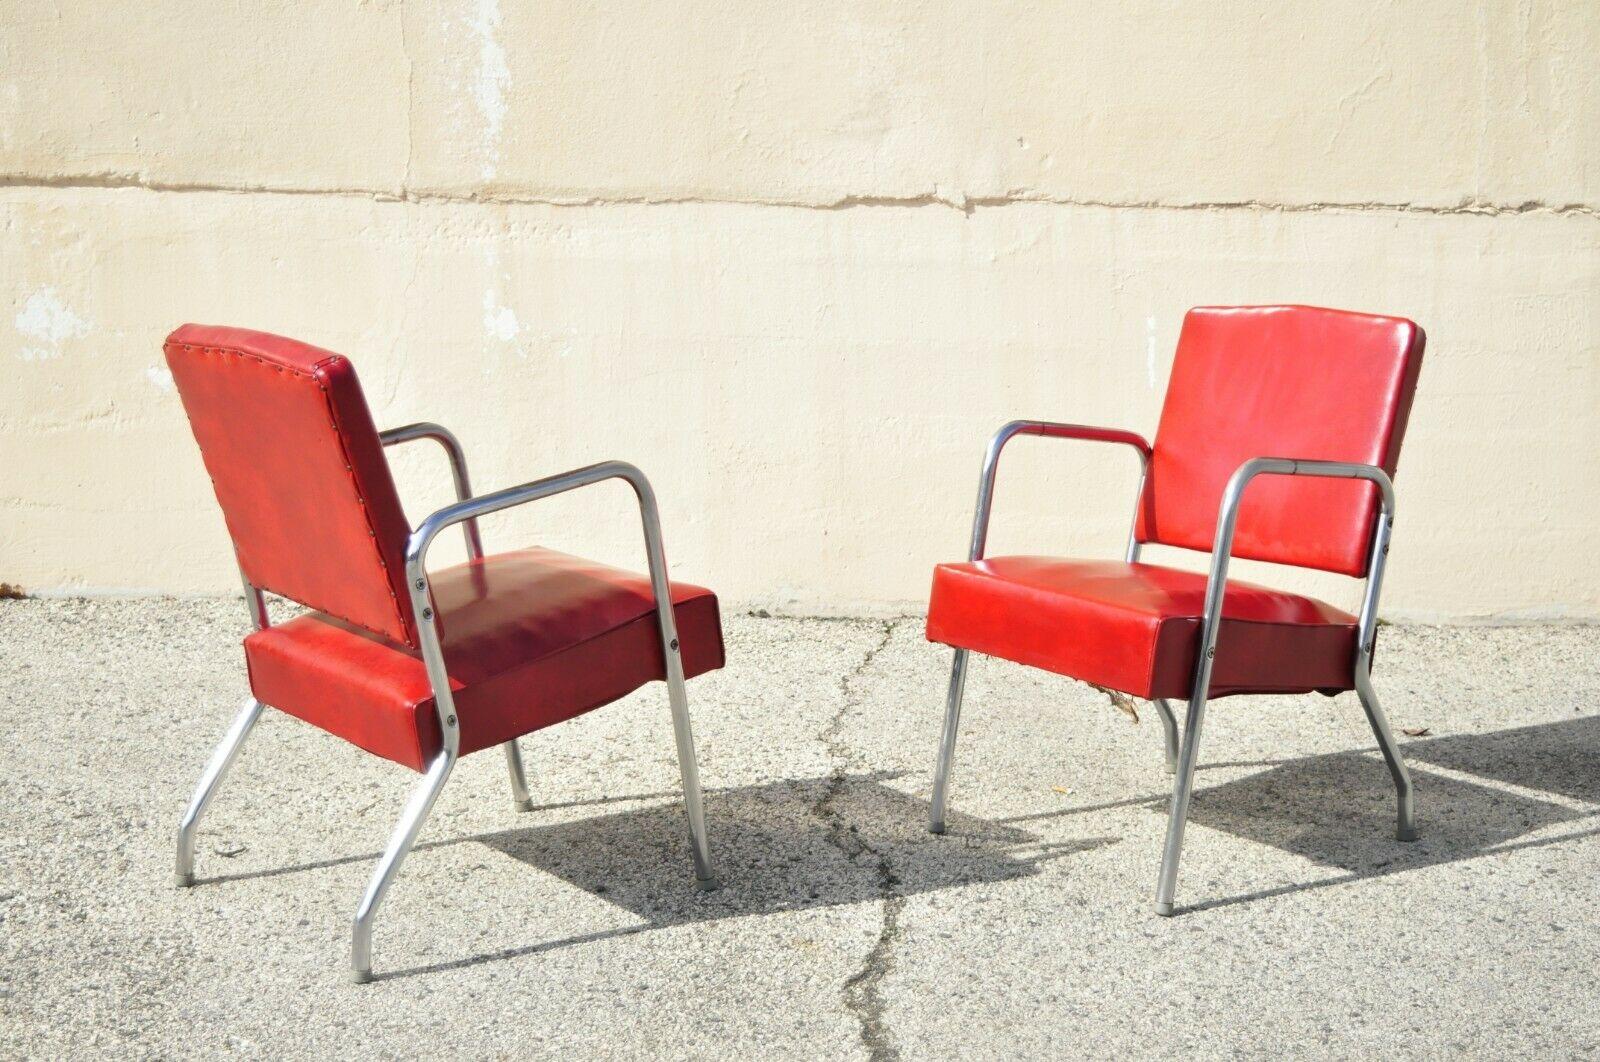 Vintage Yale Mfg. Co. Stahlrohr-Metall-Liegesitz und Paar Lounge-Sessel - 3er-Set. Artikel verfügt über (1) Loveseat, (2) Sessel, original Red Naugahyde Polsterung, sehr schöne Vintage-Set, Qualität amerikanische Handwerkskunst, großen Stil und